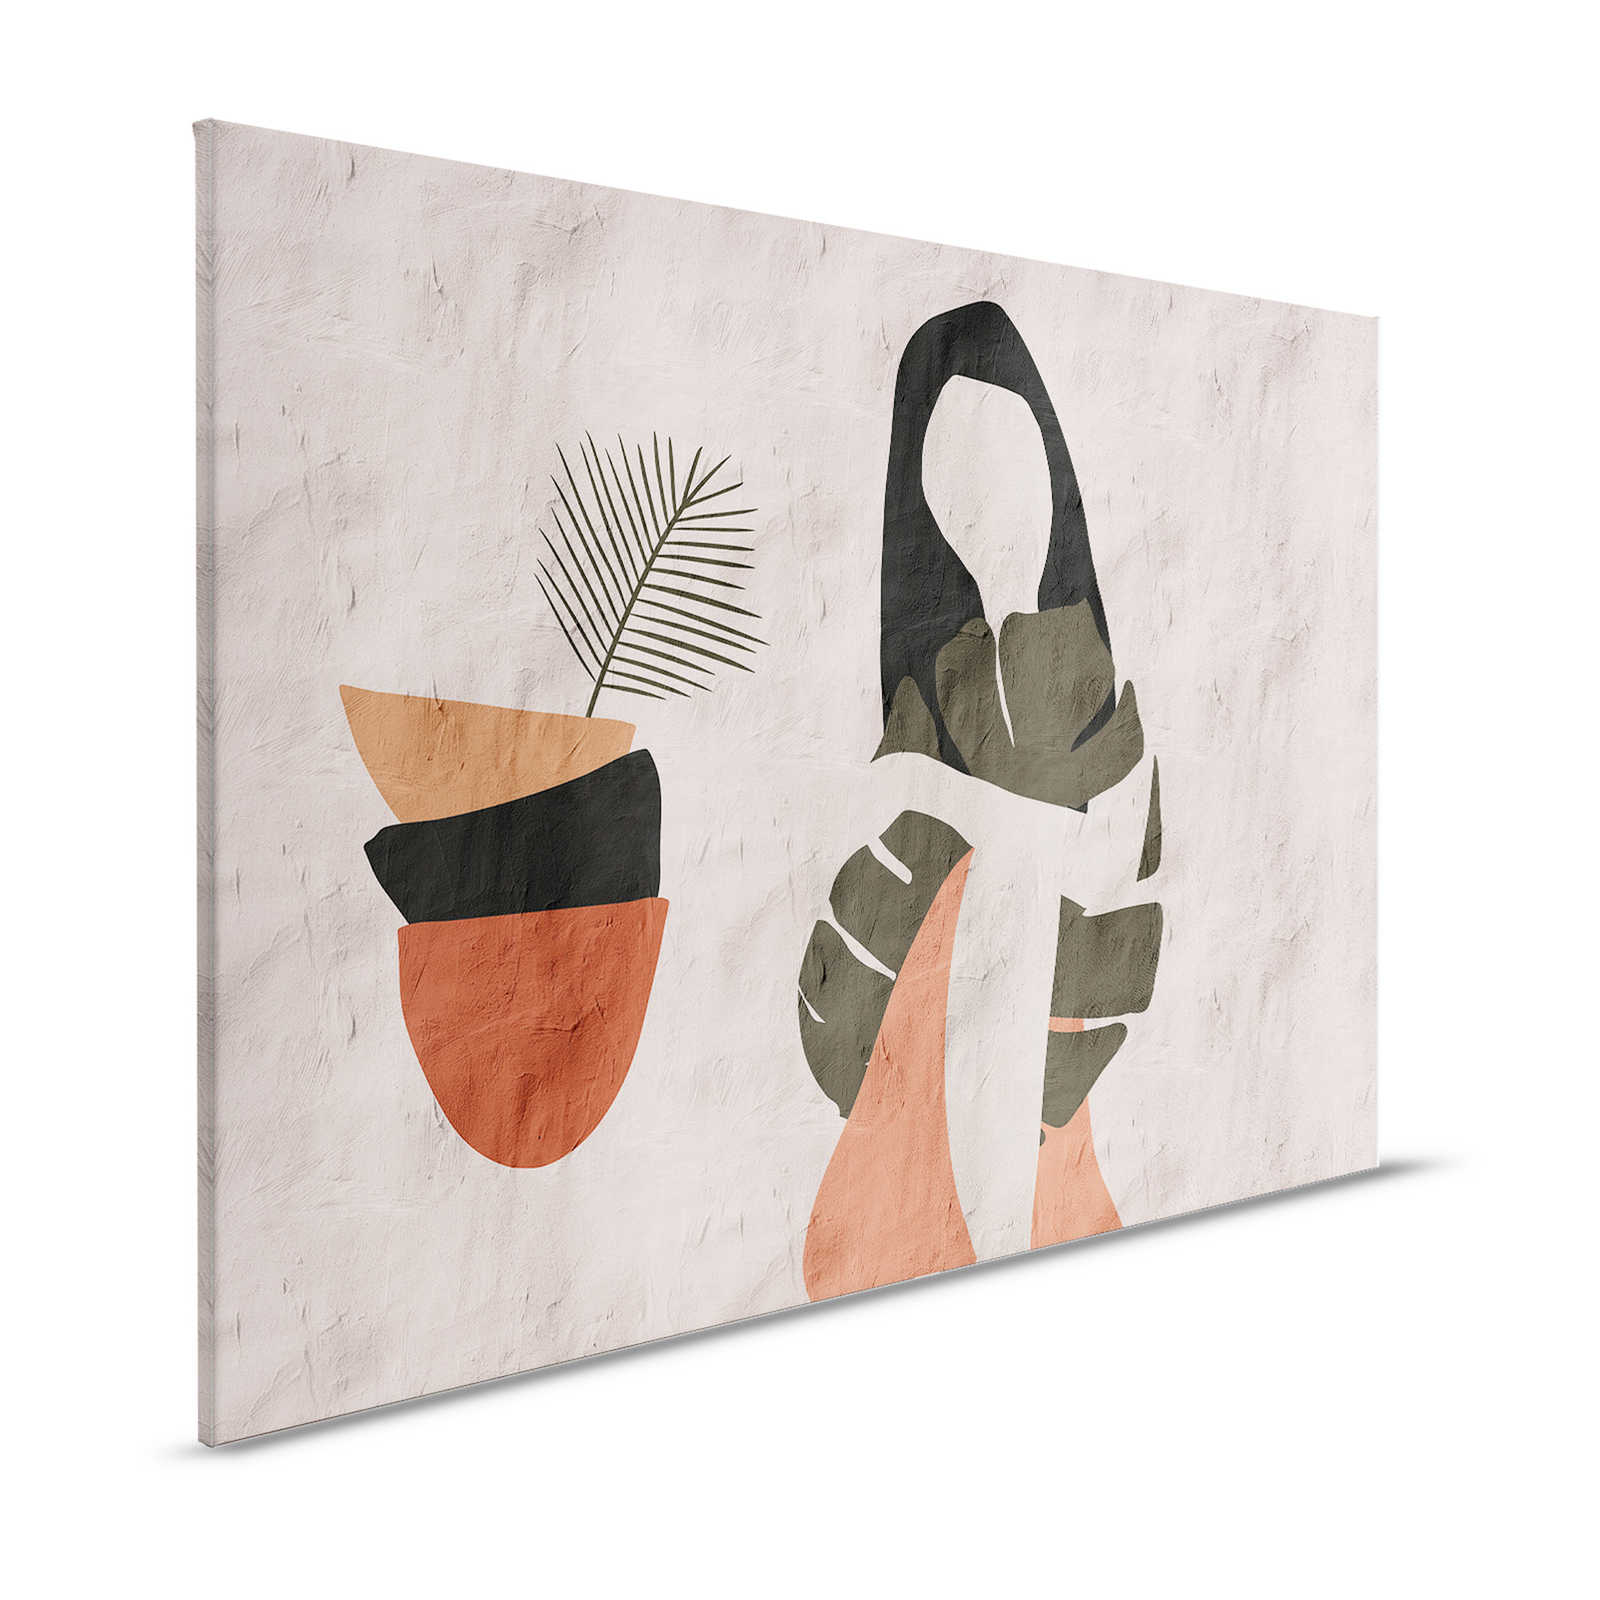 Santa Fe 1 - Tableau d'argile beige avec design ethnique - 1,20 m x 0,80 m
